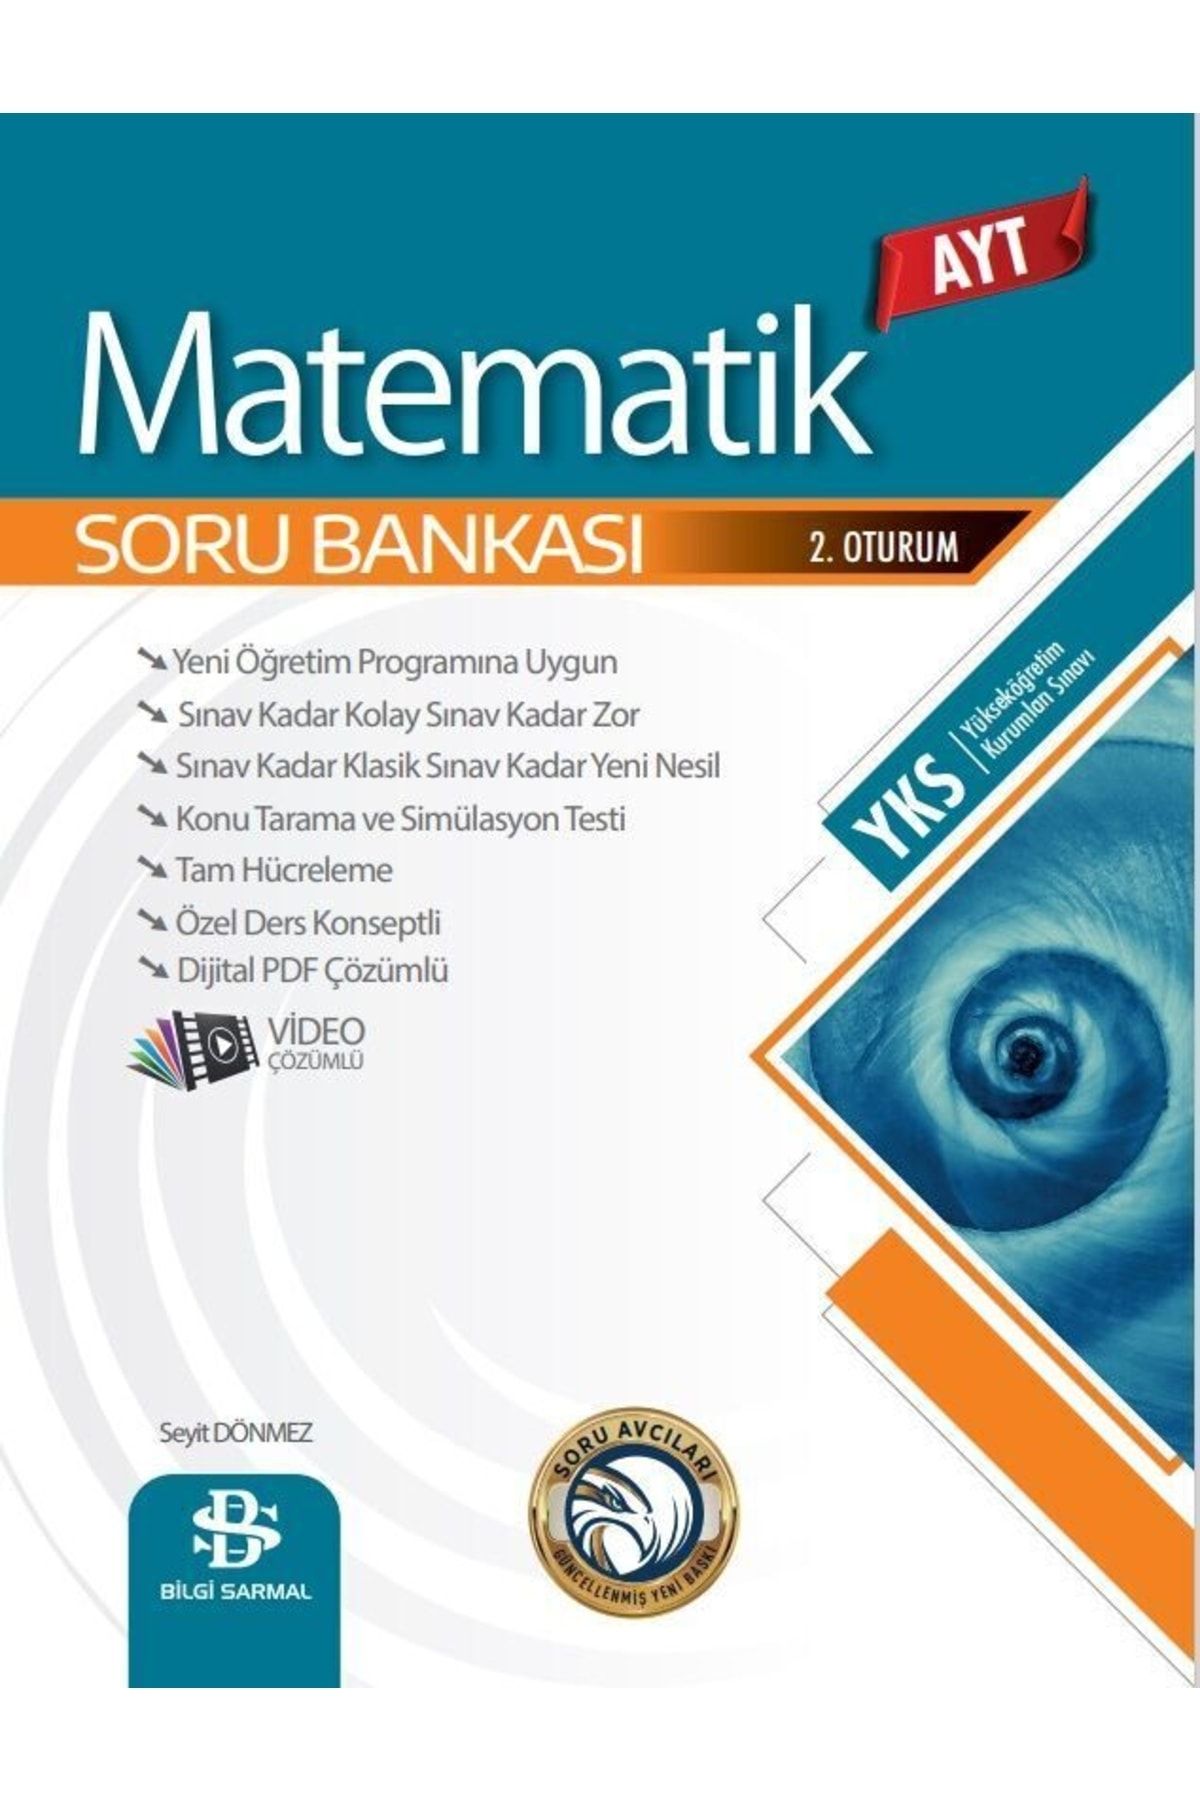 Bilgi Yayınları Bilgi Sarmal Ayt Matematik Soru Bankası